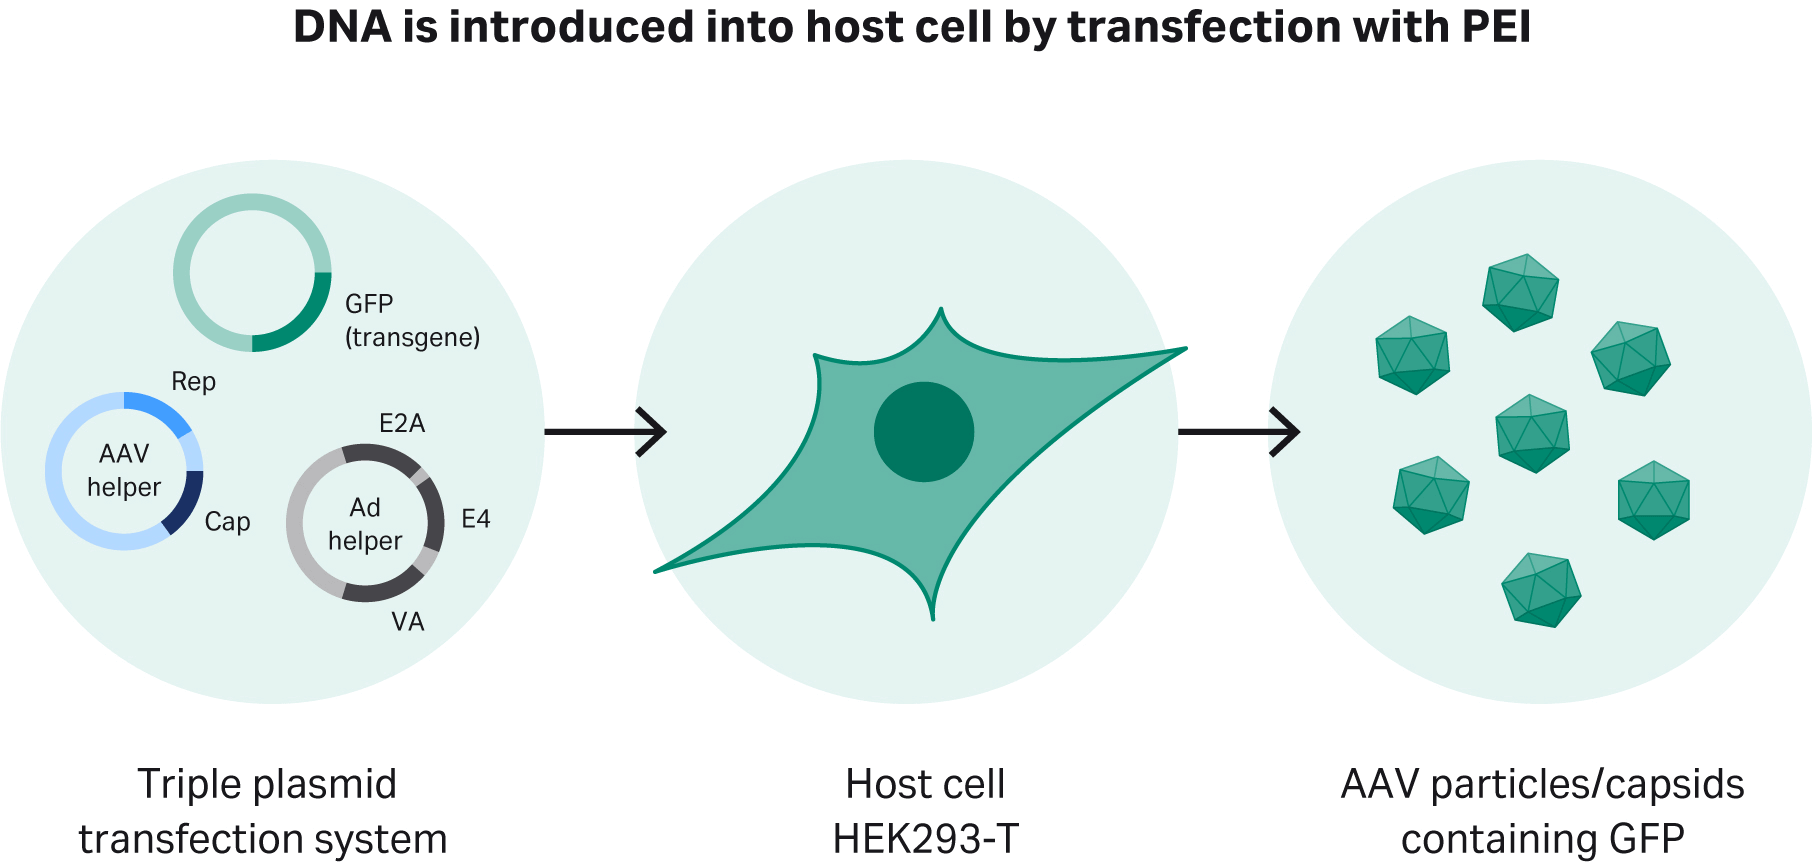 使用三重质粒转染方法对驯化的 HEK293T 细胞进行瞬时转染。